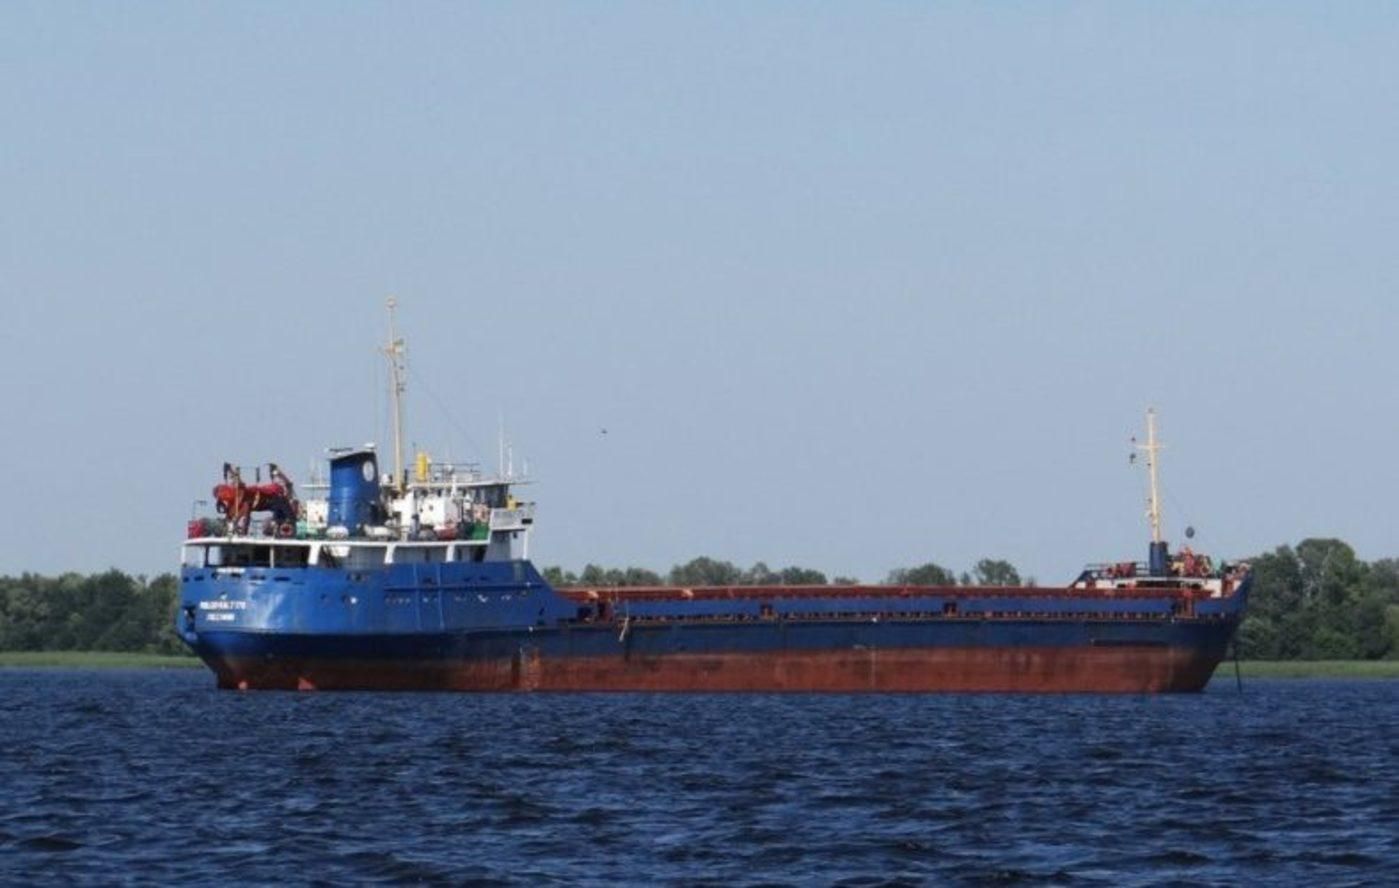 Імена членів екіпажу судна Волго Балт 179, яке затонуло біля Румунії 